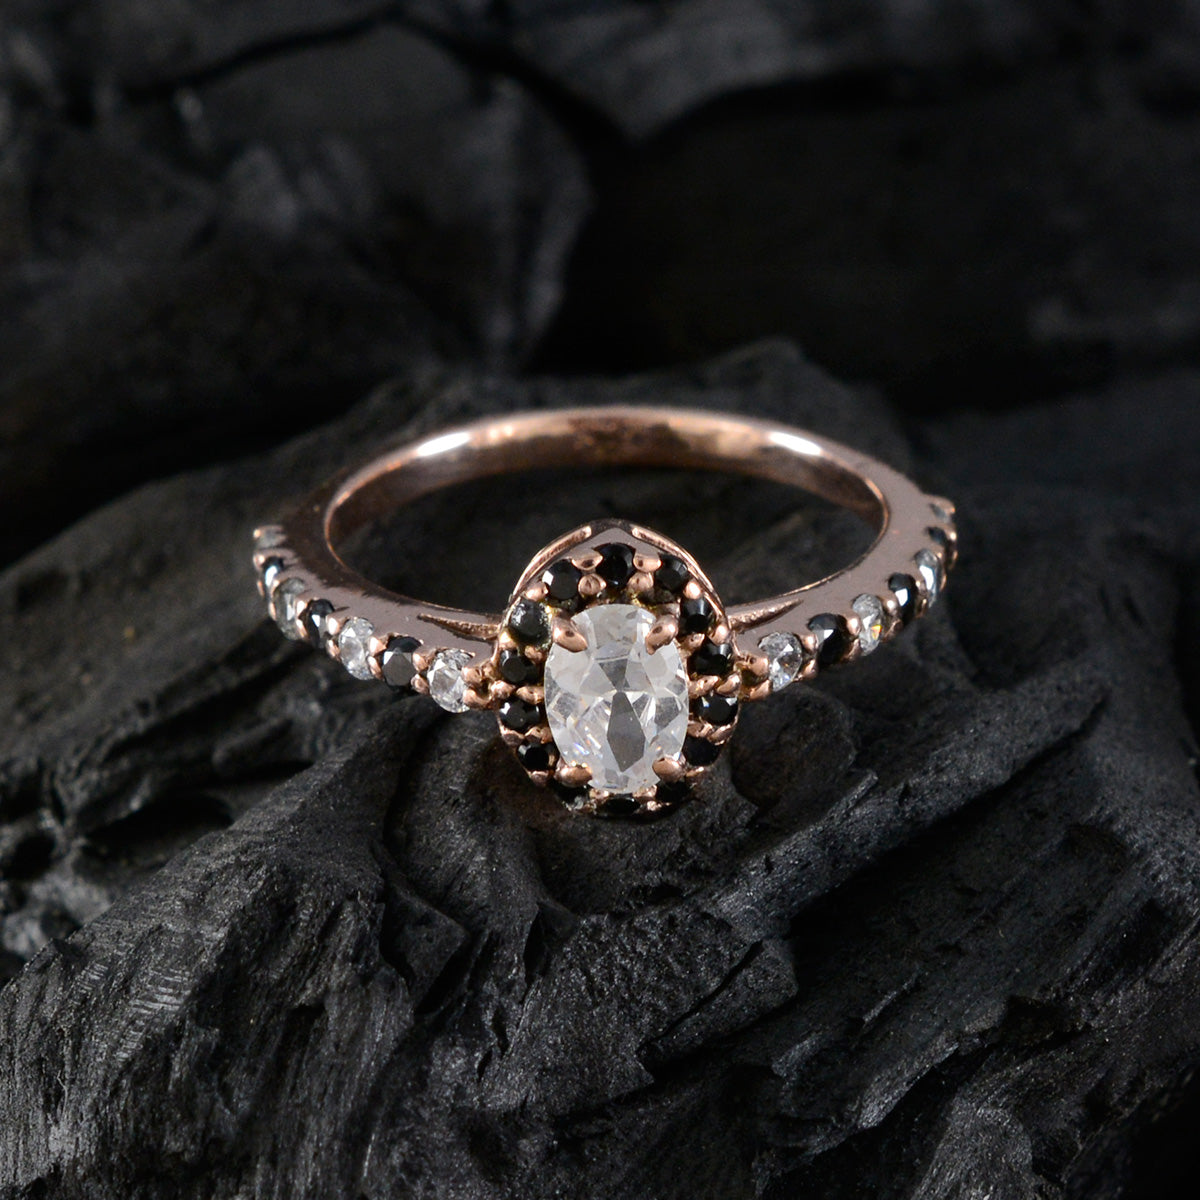 riyo bellissimo anello in argento con placcatura in oro rosa, fede nuziale con pietra di zaffiro blu, forma ovale, montatura a punta